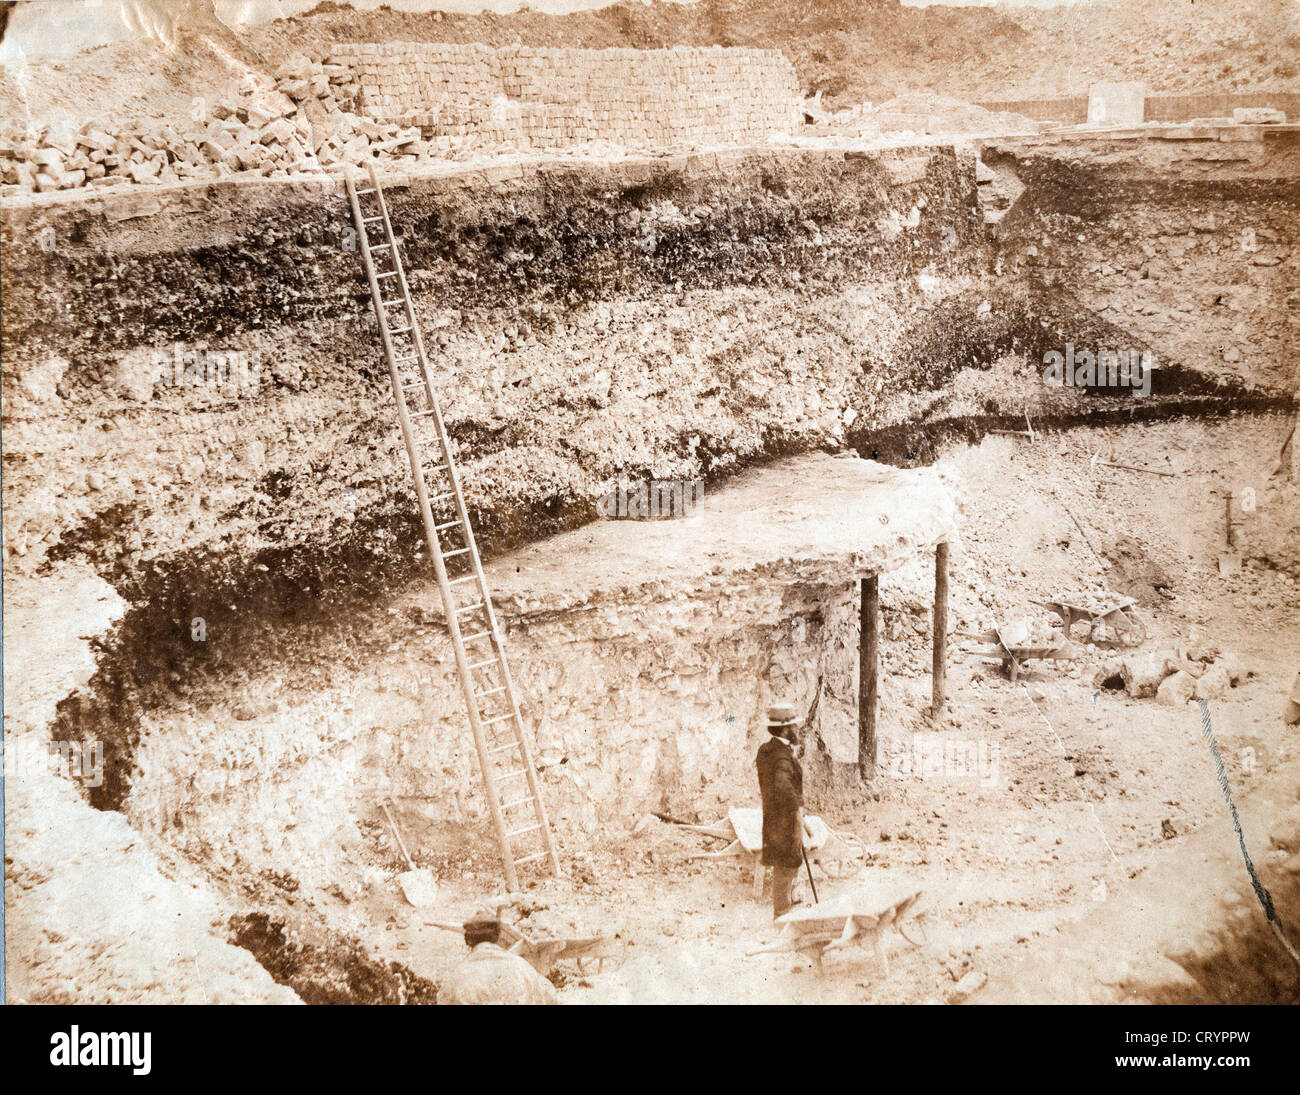 Excavation Site, ca 1850 Stock Photo